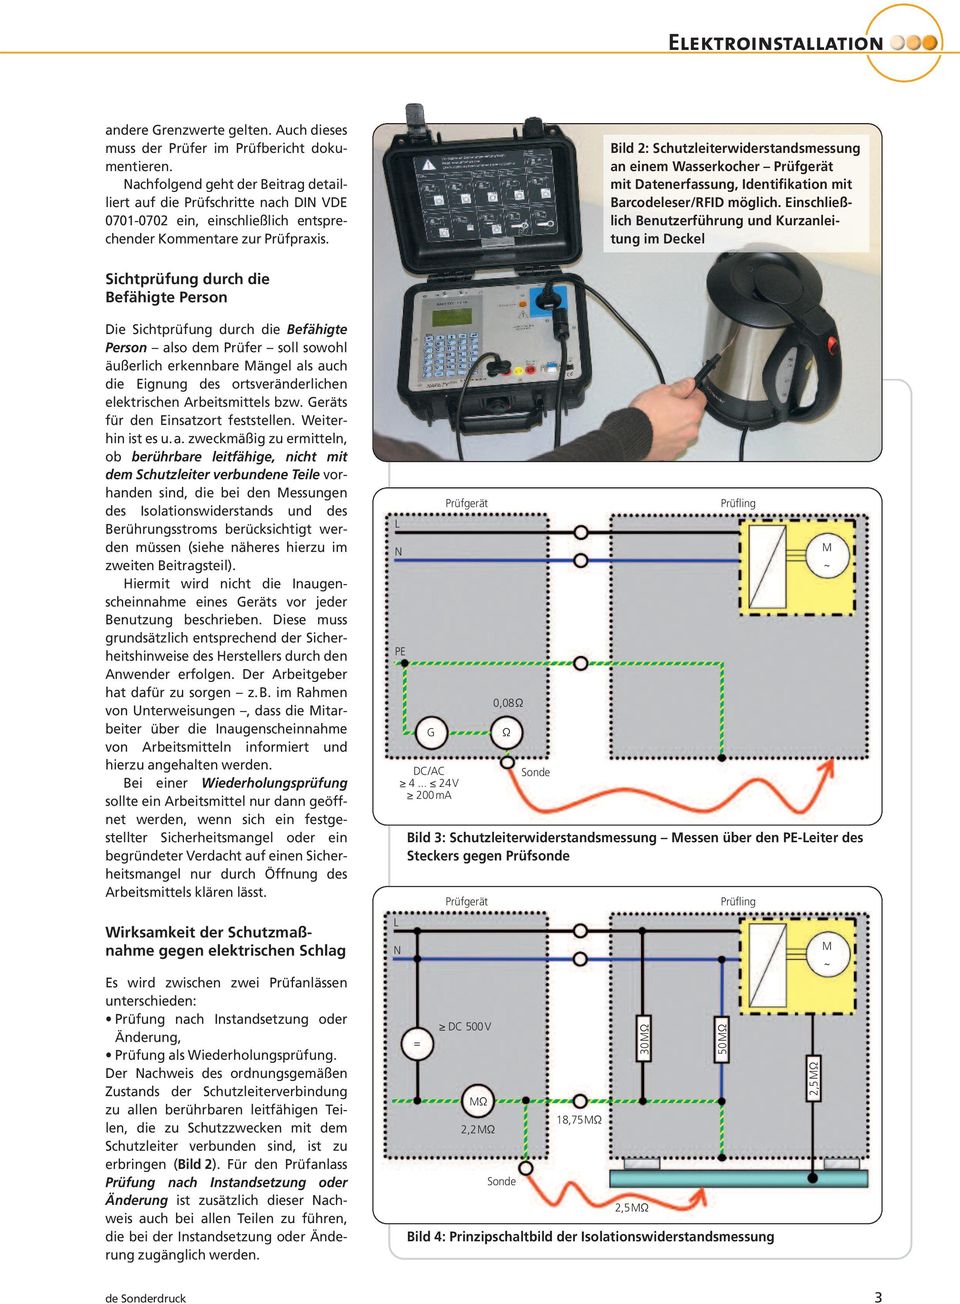 Bild 2: Schutzleiterwiderstandsmessung an einem Wasserkocher Prüf gerät mit Datenerfassung, Identifikation mit Barcodeleser/RFID möglich.